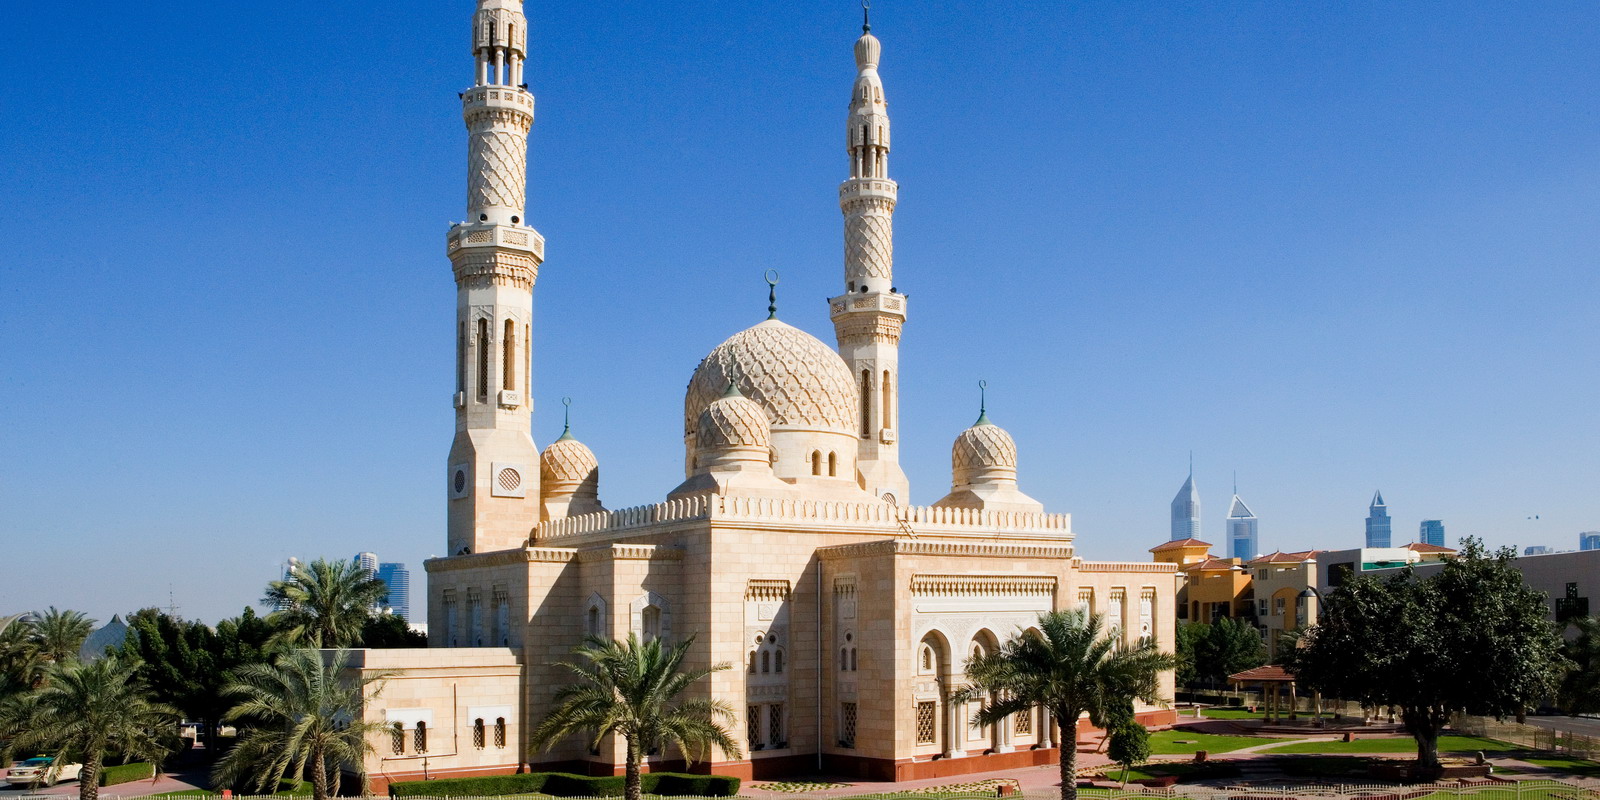 Jumeriah Mosque, Dubai